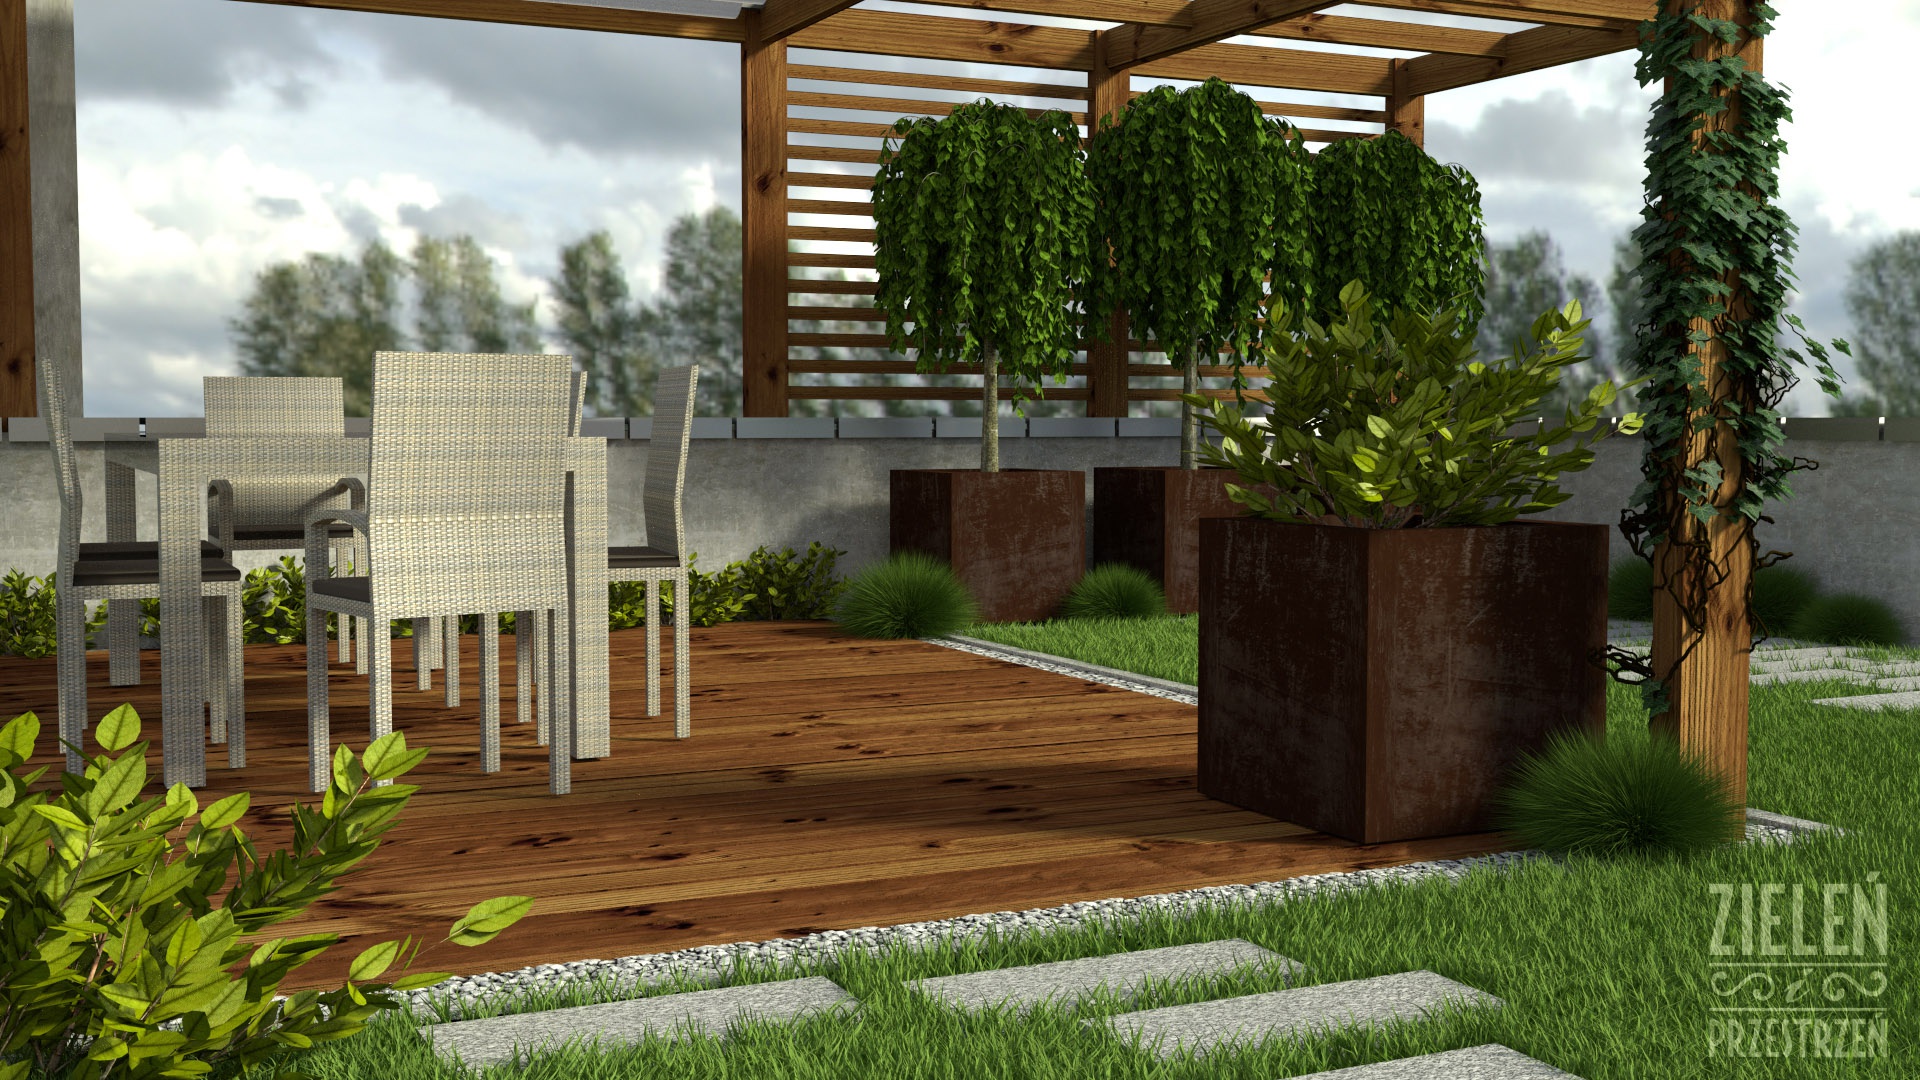 Projekt zakłada wykorzystanie systemu zielonego dachu. Trawnik i mniejsze rośliny zaprojektowane zostały bezpośrednio na podłożu. Projekt Zieleń i Przestrzeń.jpg